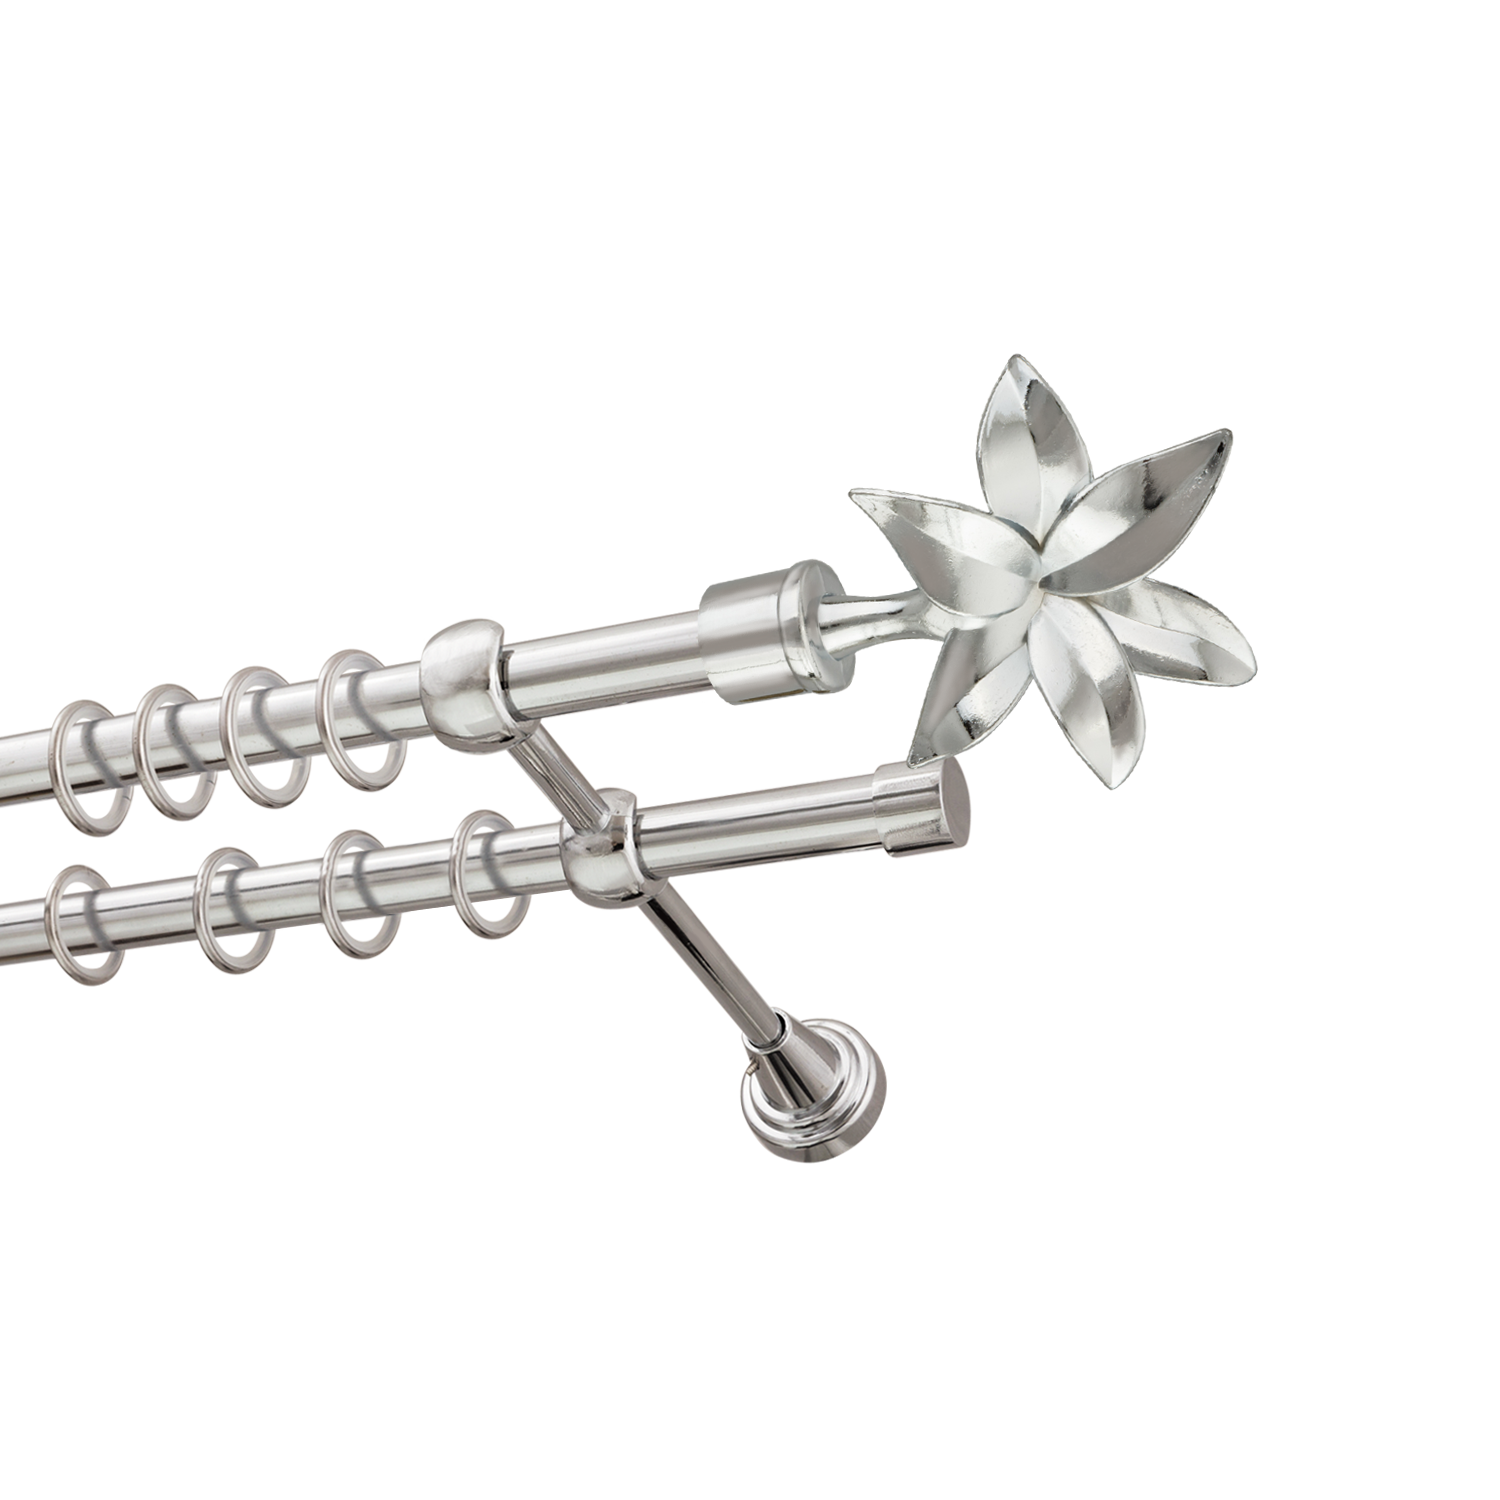 Металлический карниз для штор Магнолия, двухрядный 16/16 мм, серебро, гладкая штанга, длина 240 см - фото Wikidecor.ru